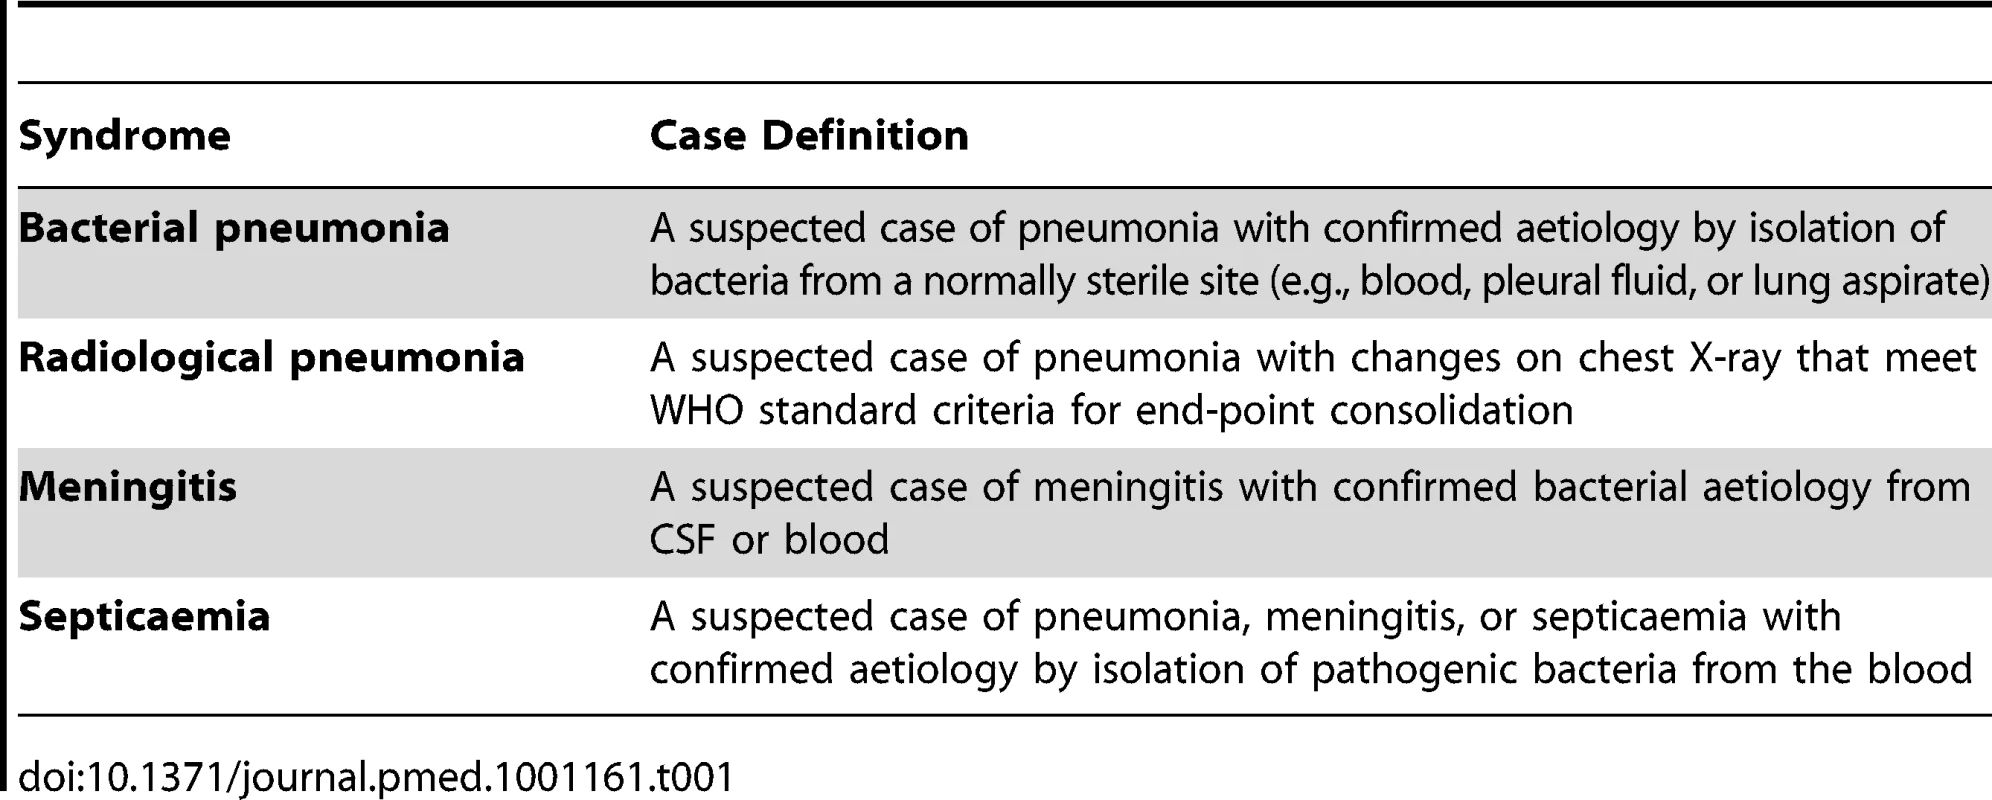 Case definitions for pneumonia, meningitis, and septicaemia.